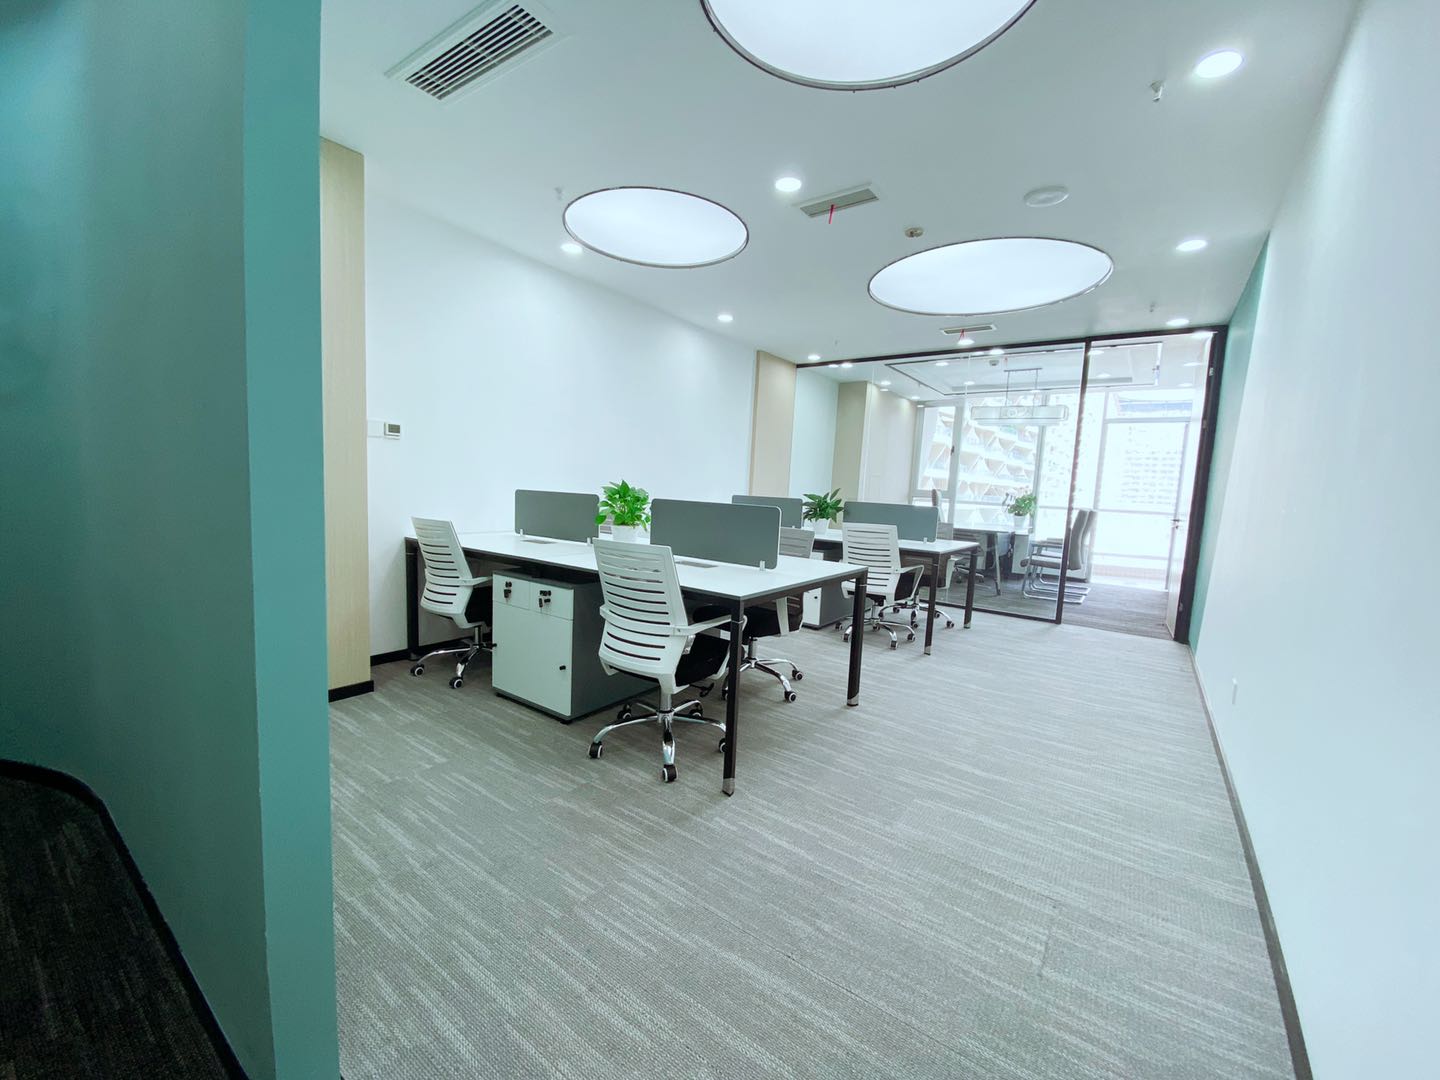 高新区新世纪环球中心精装小面积办公室 小清新网红风格 含物业和空调费